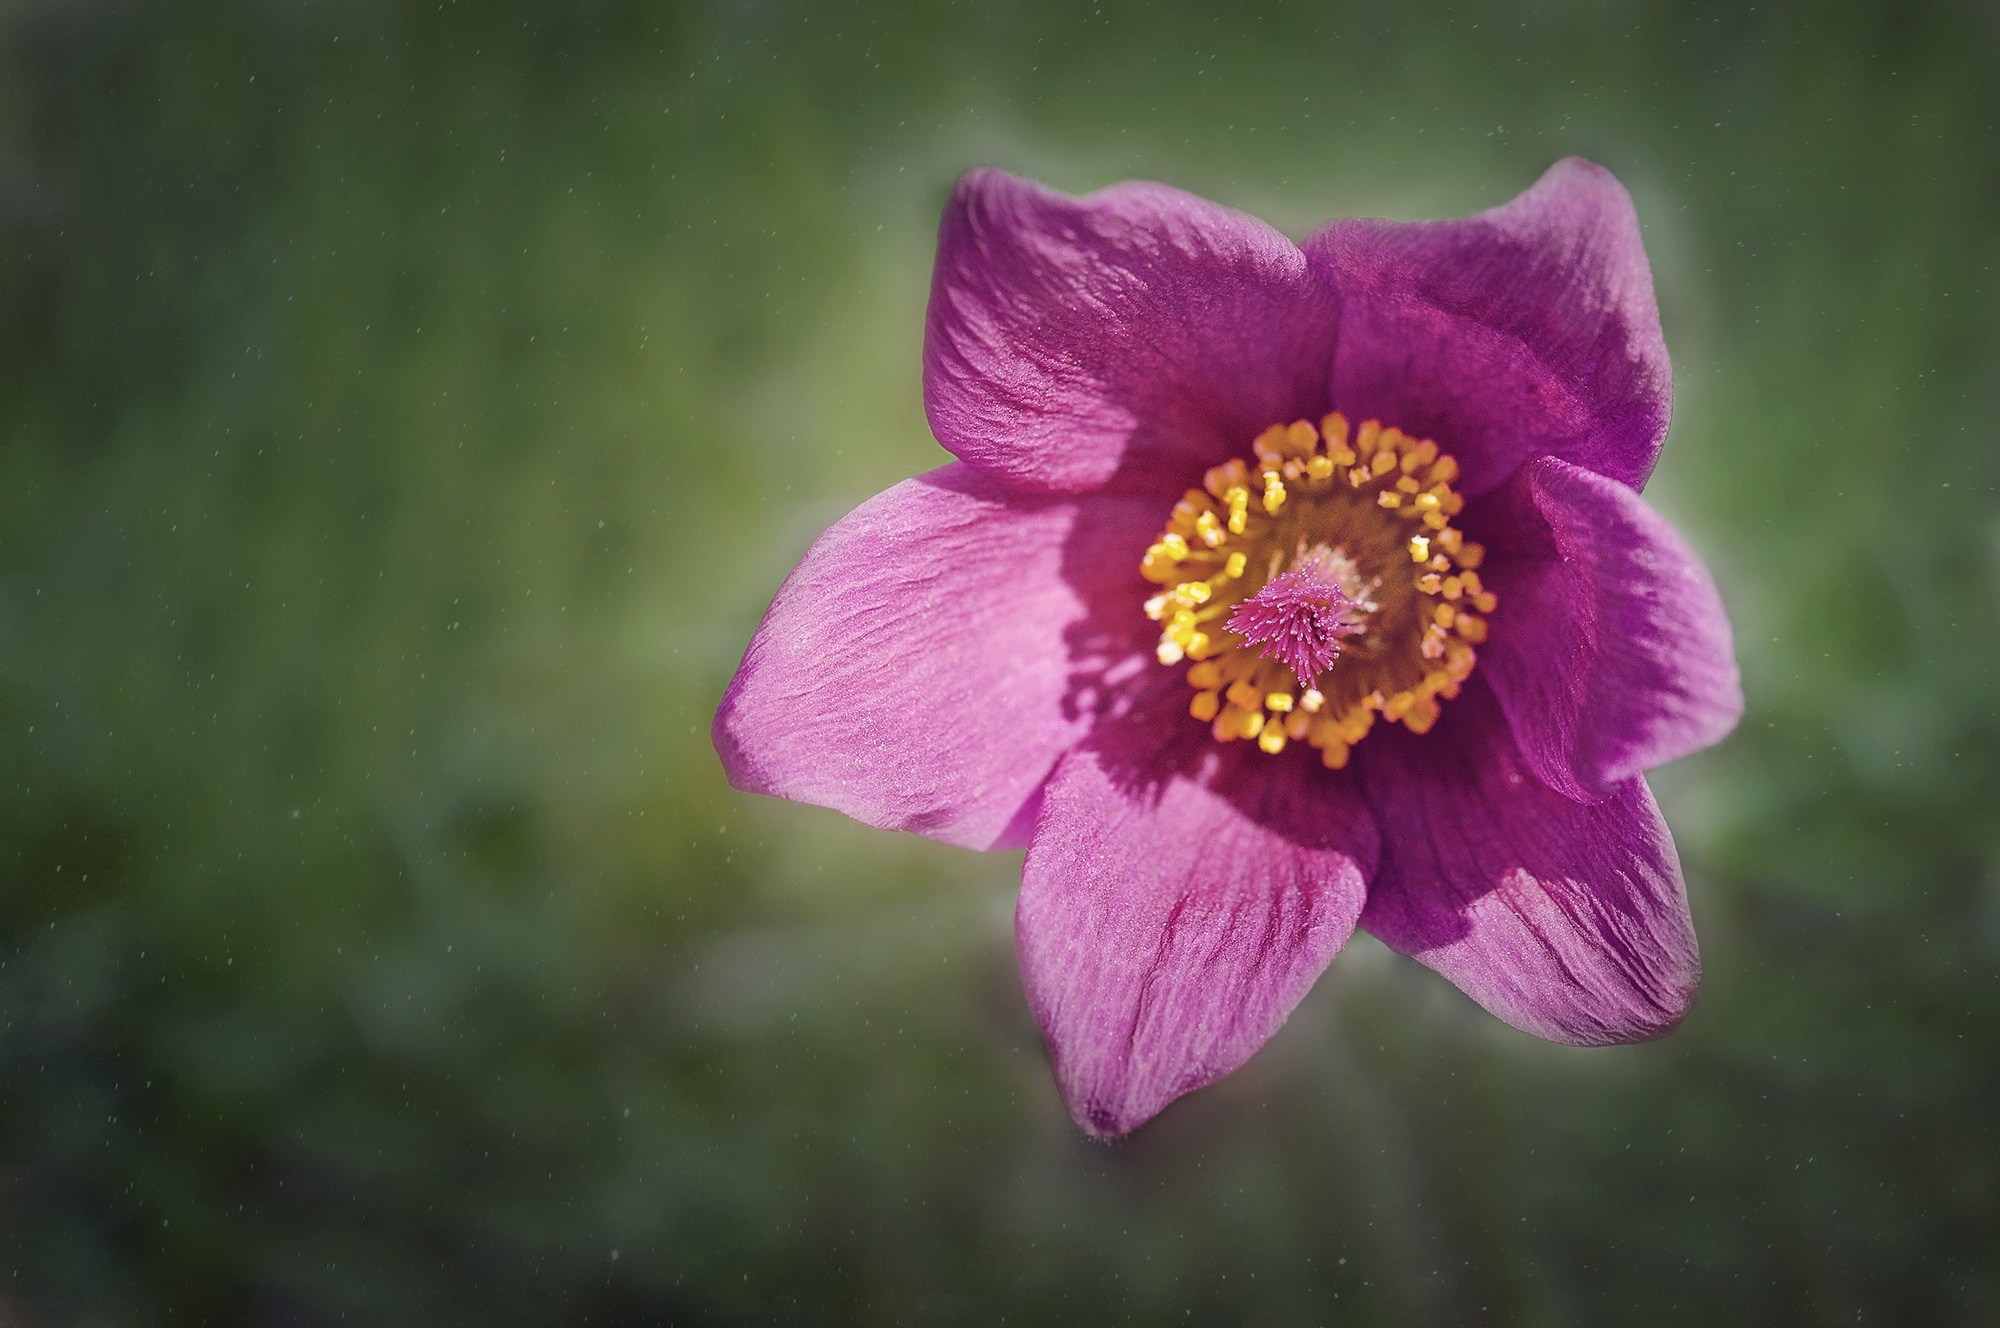 purple 6 petal flower